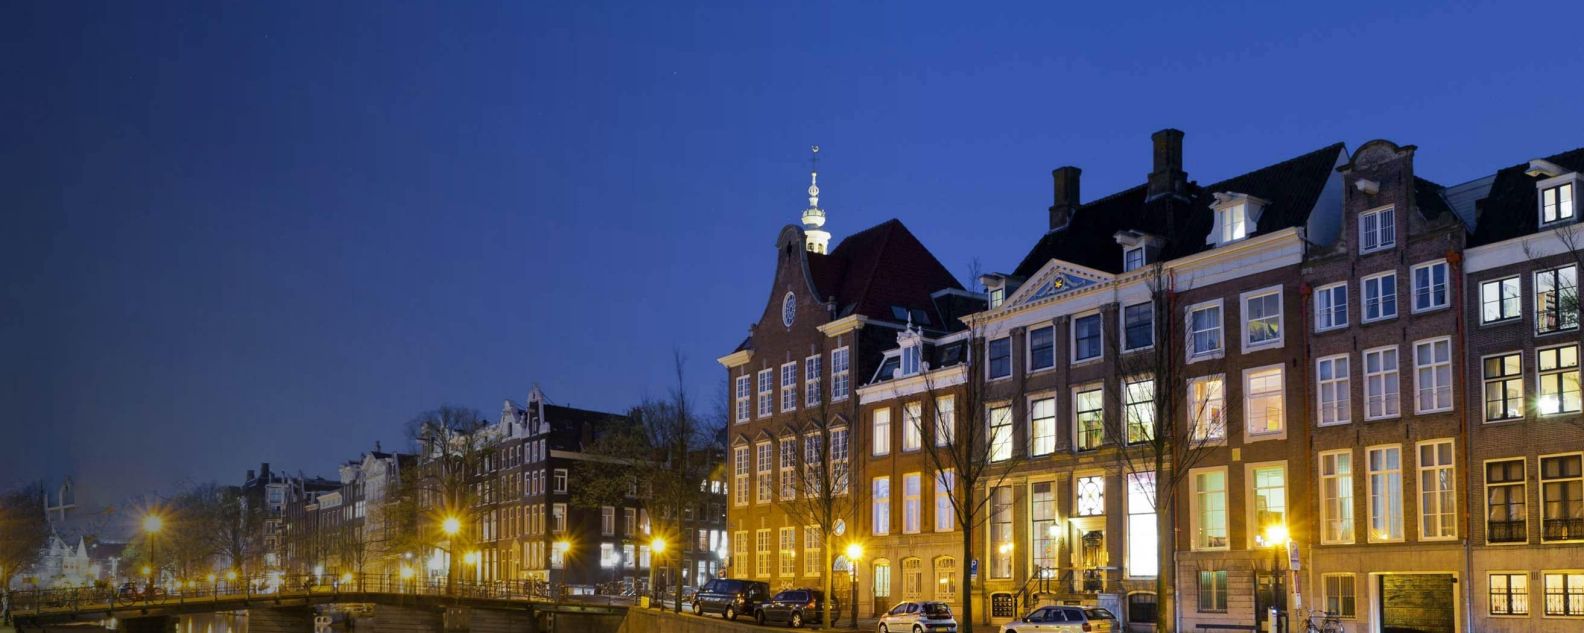 荷兰阿姆斯特丹传统建筑的照片